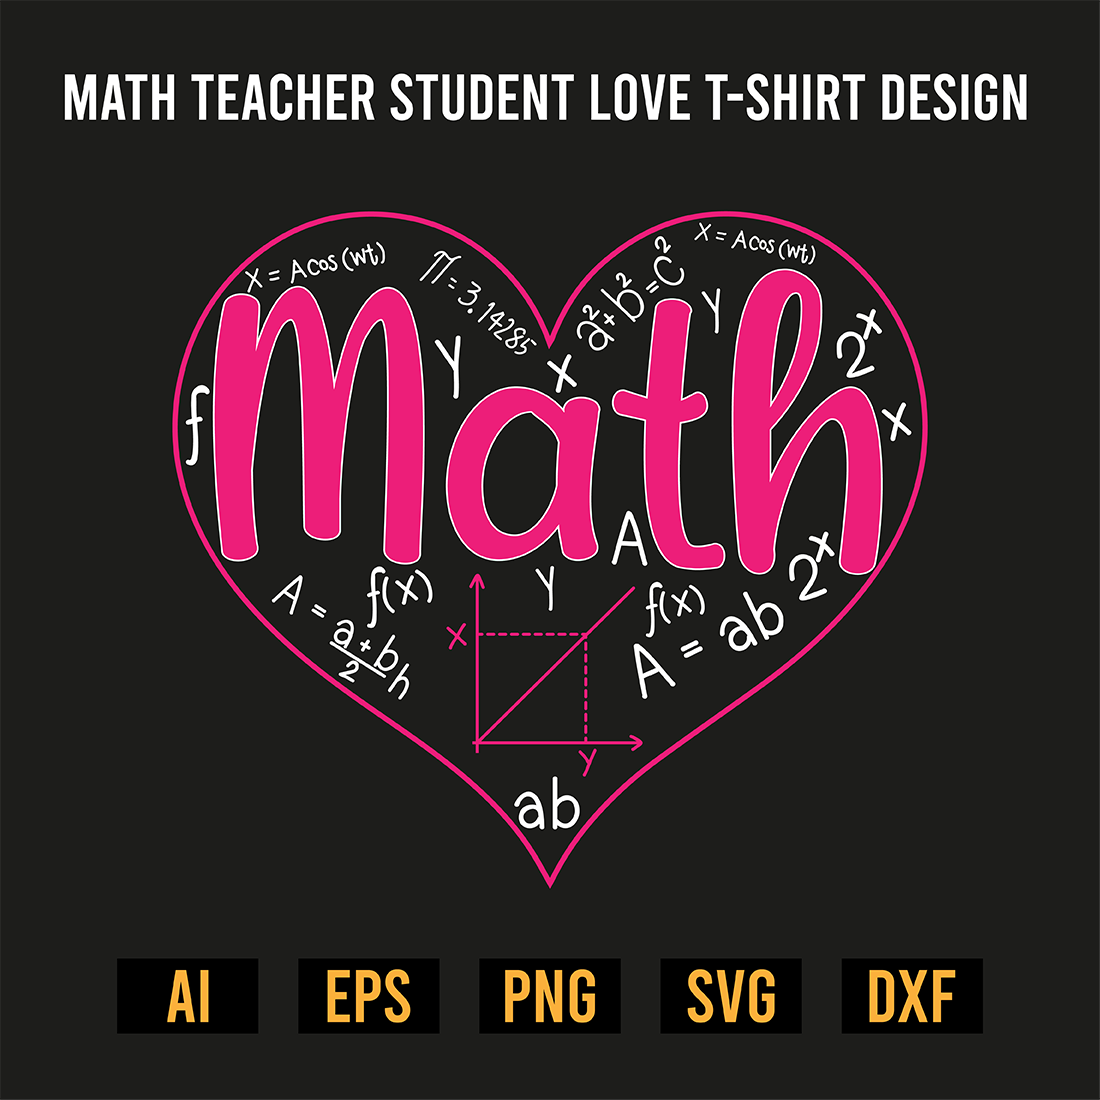 Math Teacher Student Love T-Shirt Design image preview.